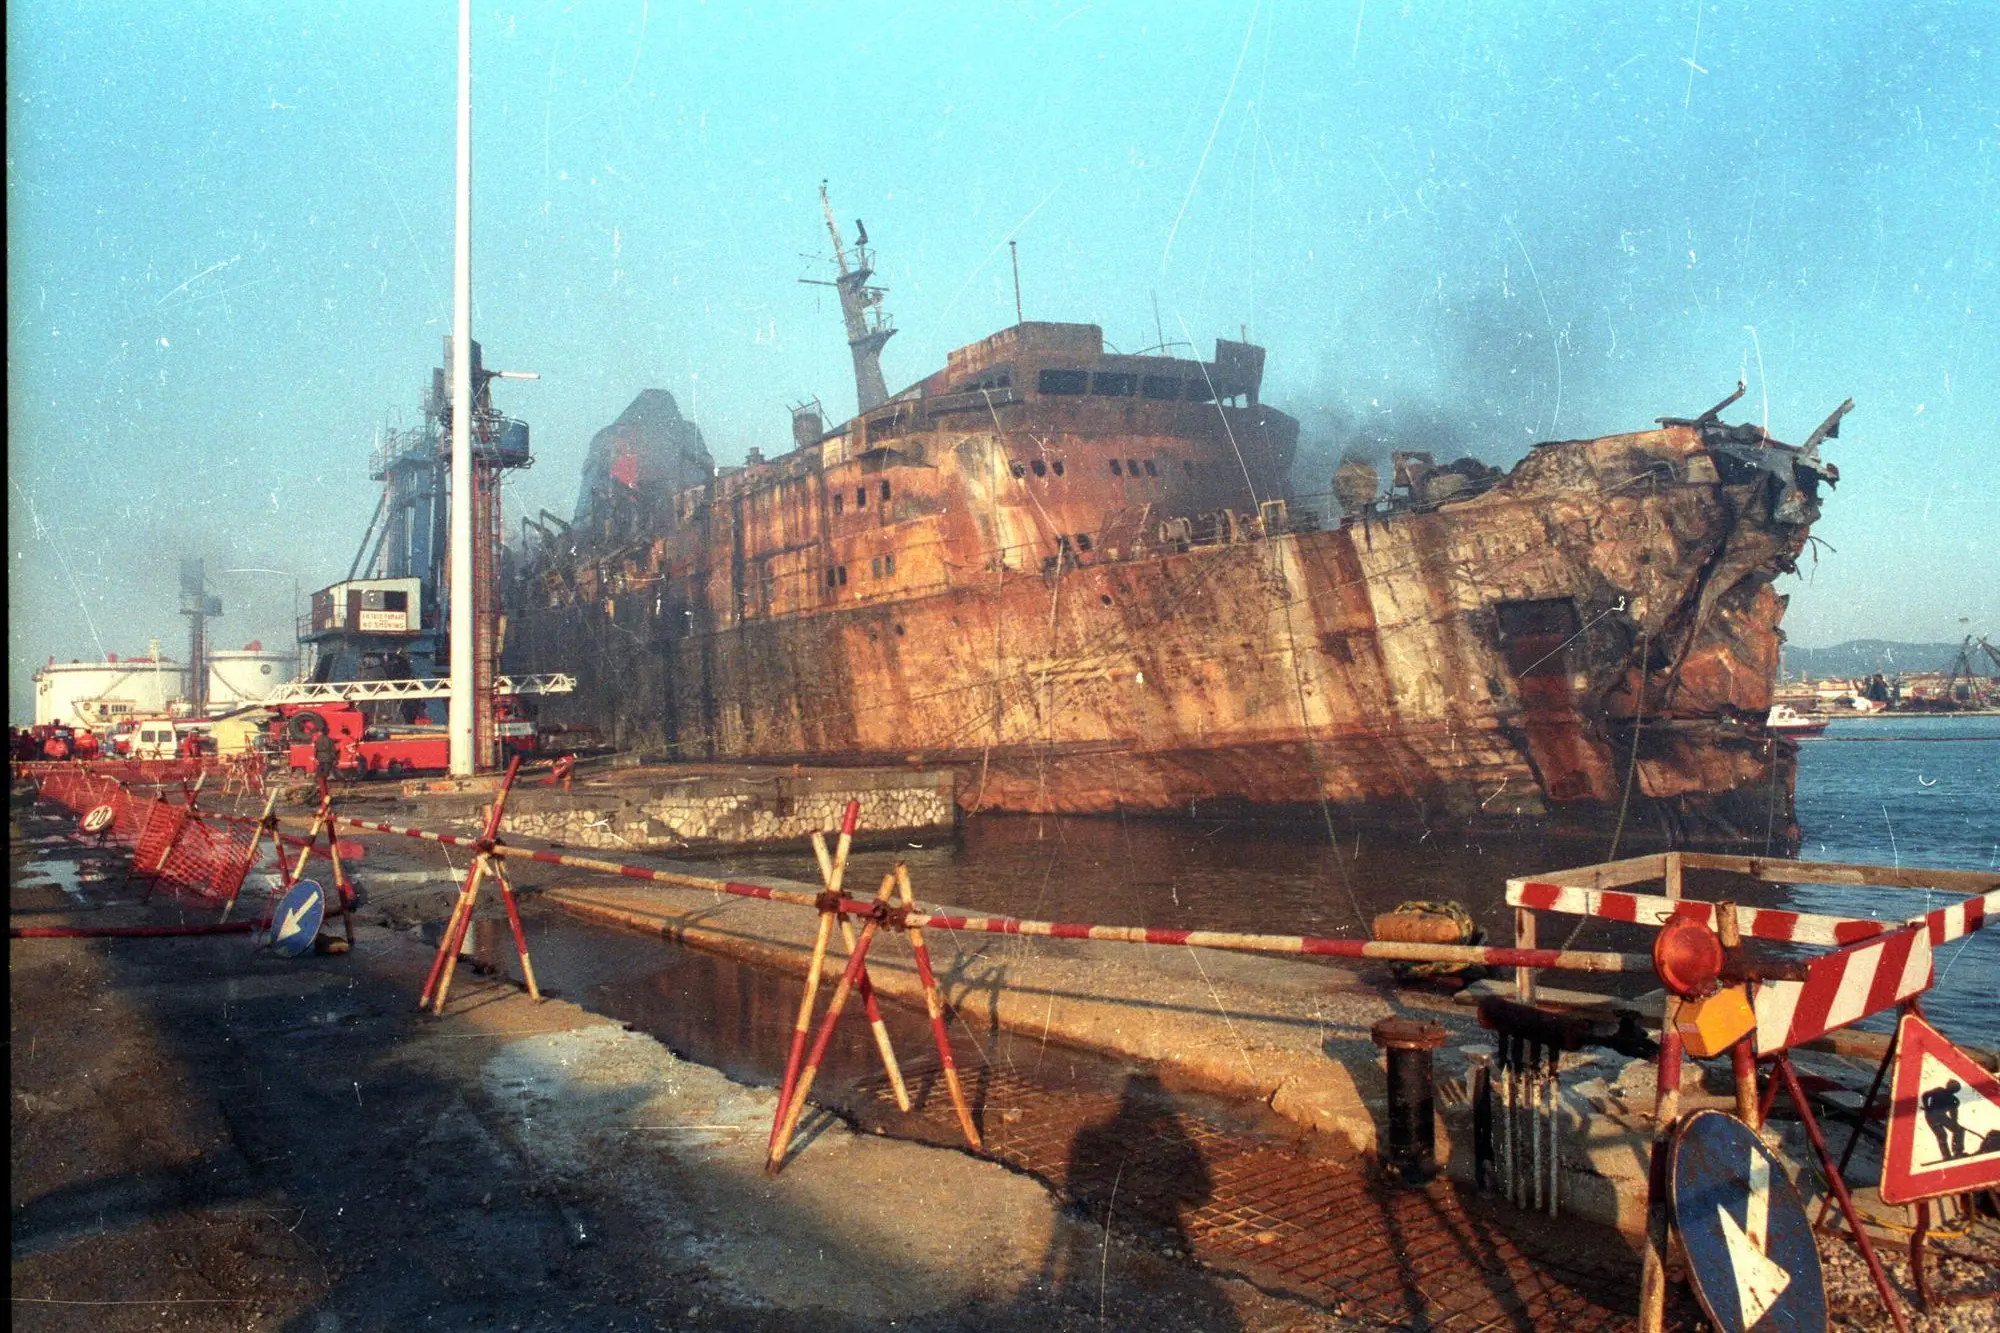 Una immagine del traghetto Moby Prince dopo l'incendio causato dalla collisione con la petroliera Agip Abruzzo, Livorno 12 aprile 1991.  ANSA ARCHIVIO